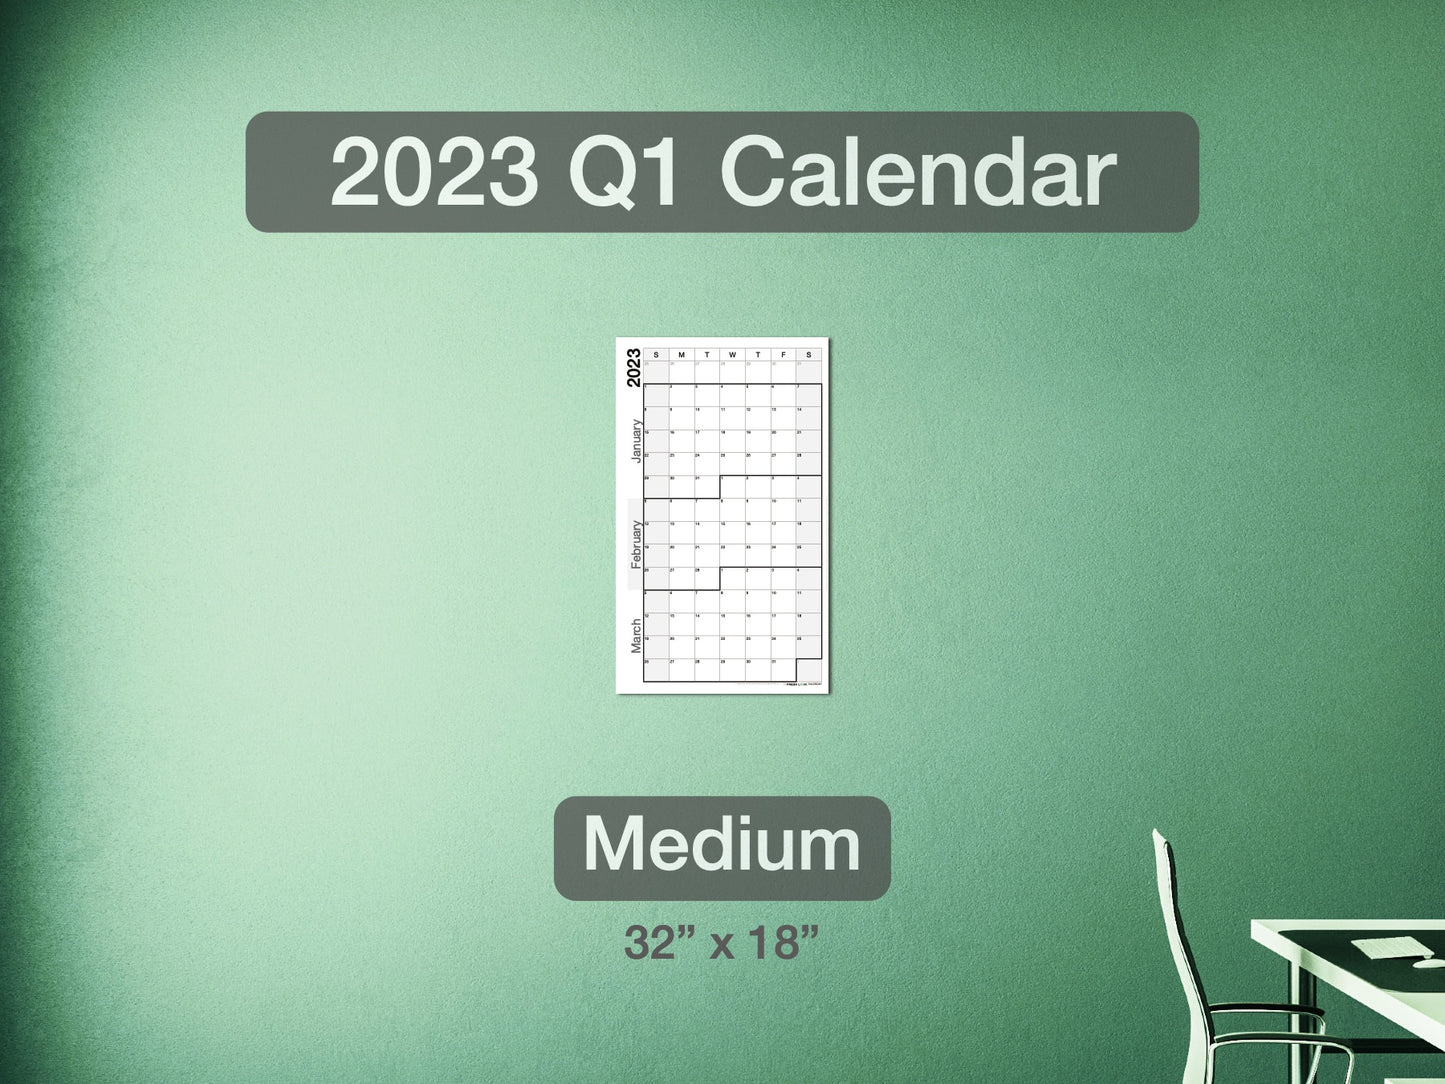 2023 Q1 Calendar Medium